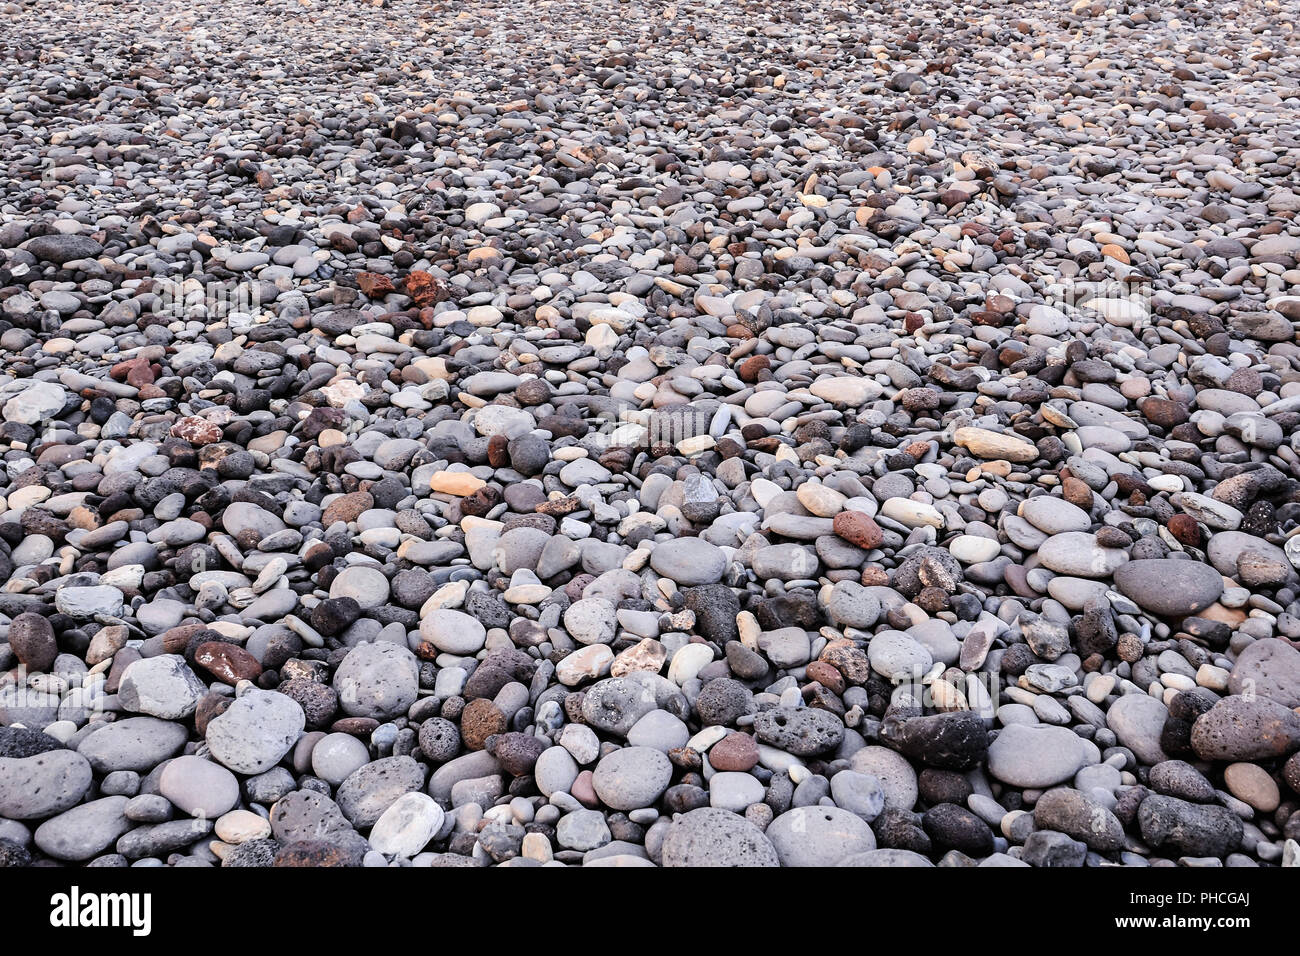 Dry round reeble stones Stock Photo